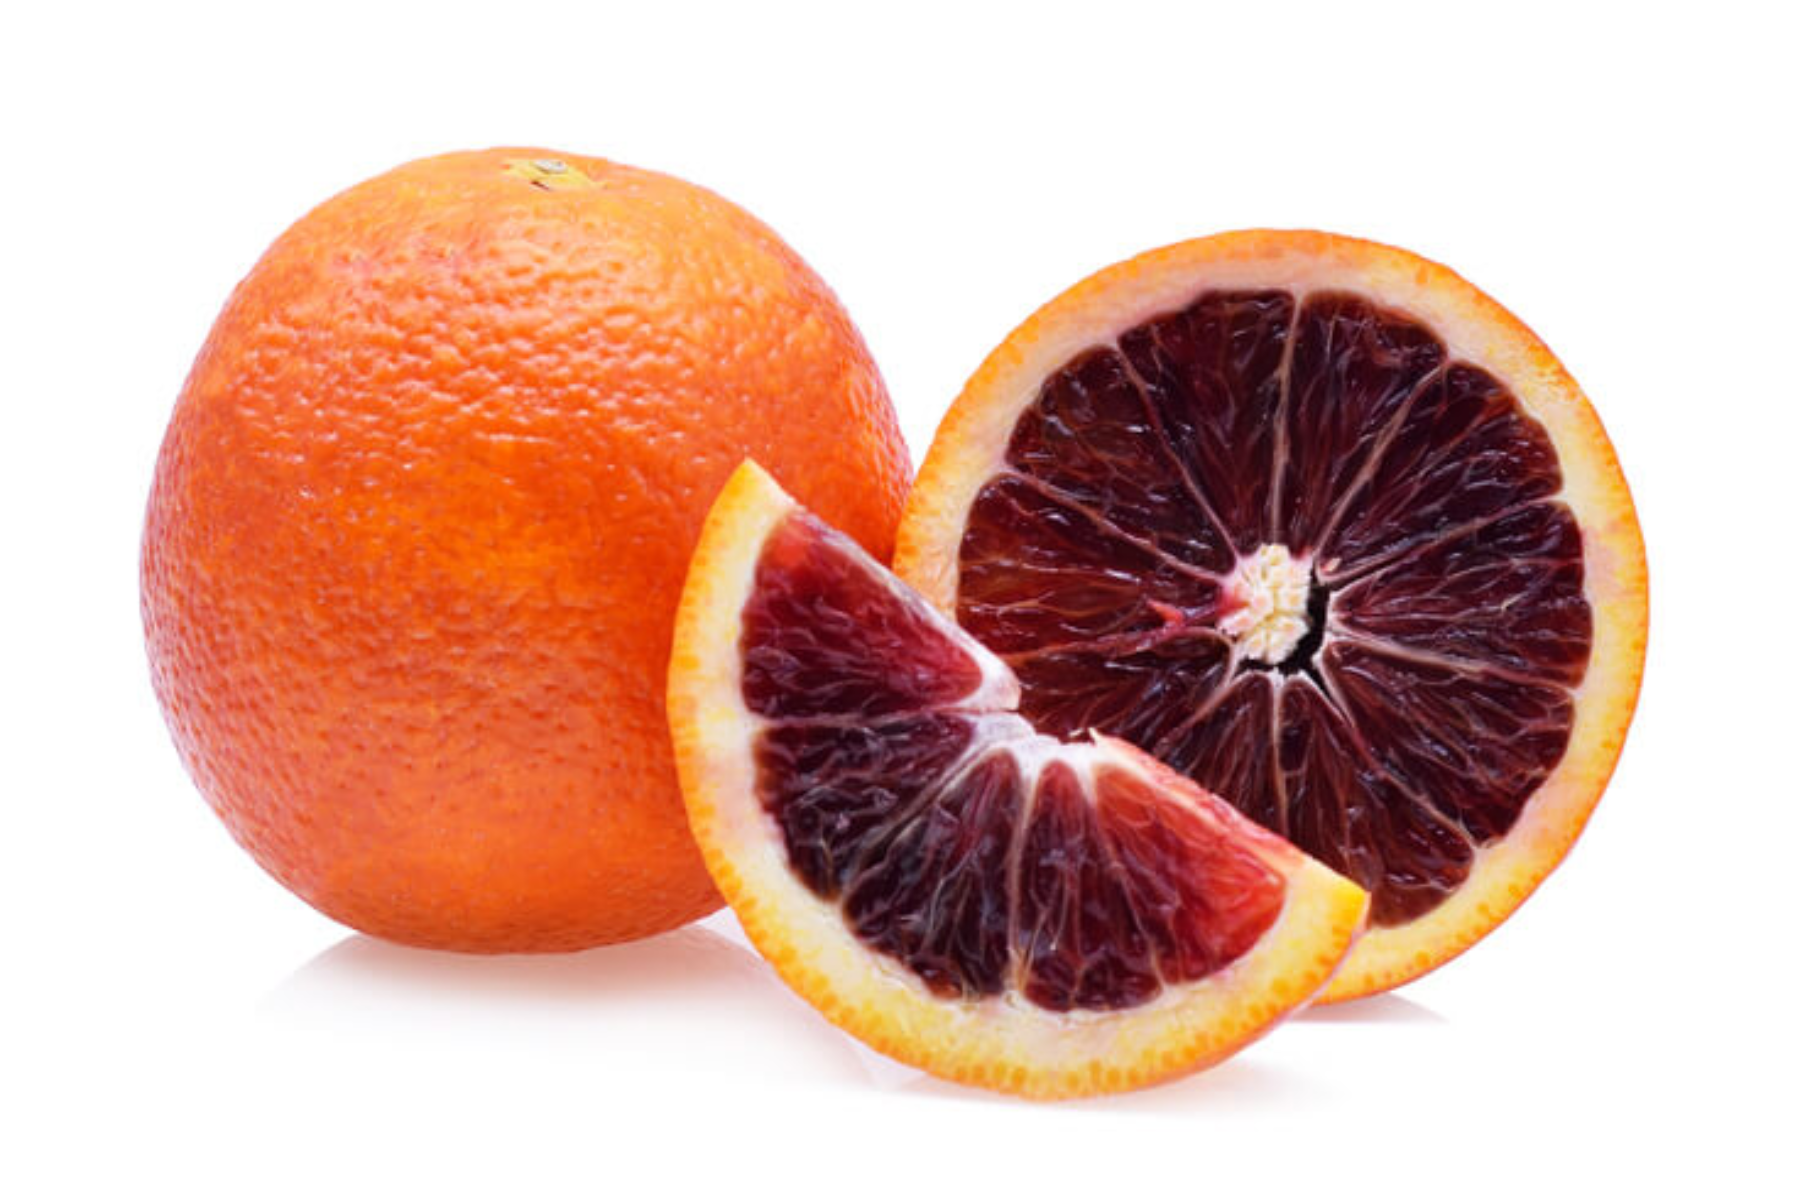 Πορτοκάλια σαγκουΐνι: Τα οφέλη από την κατανάλωση των σαγκουΐνι πορτοκαλιών